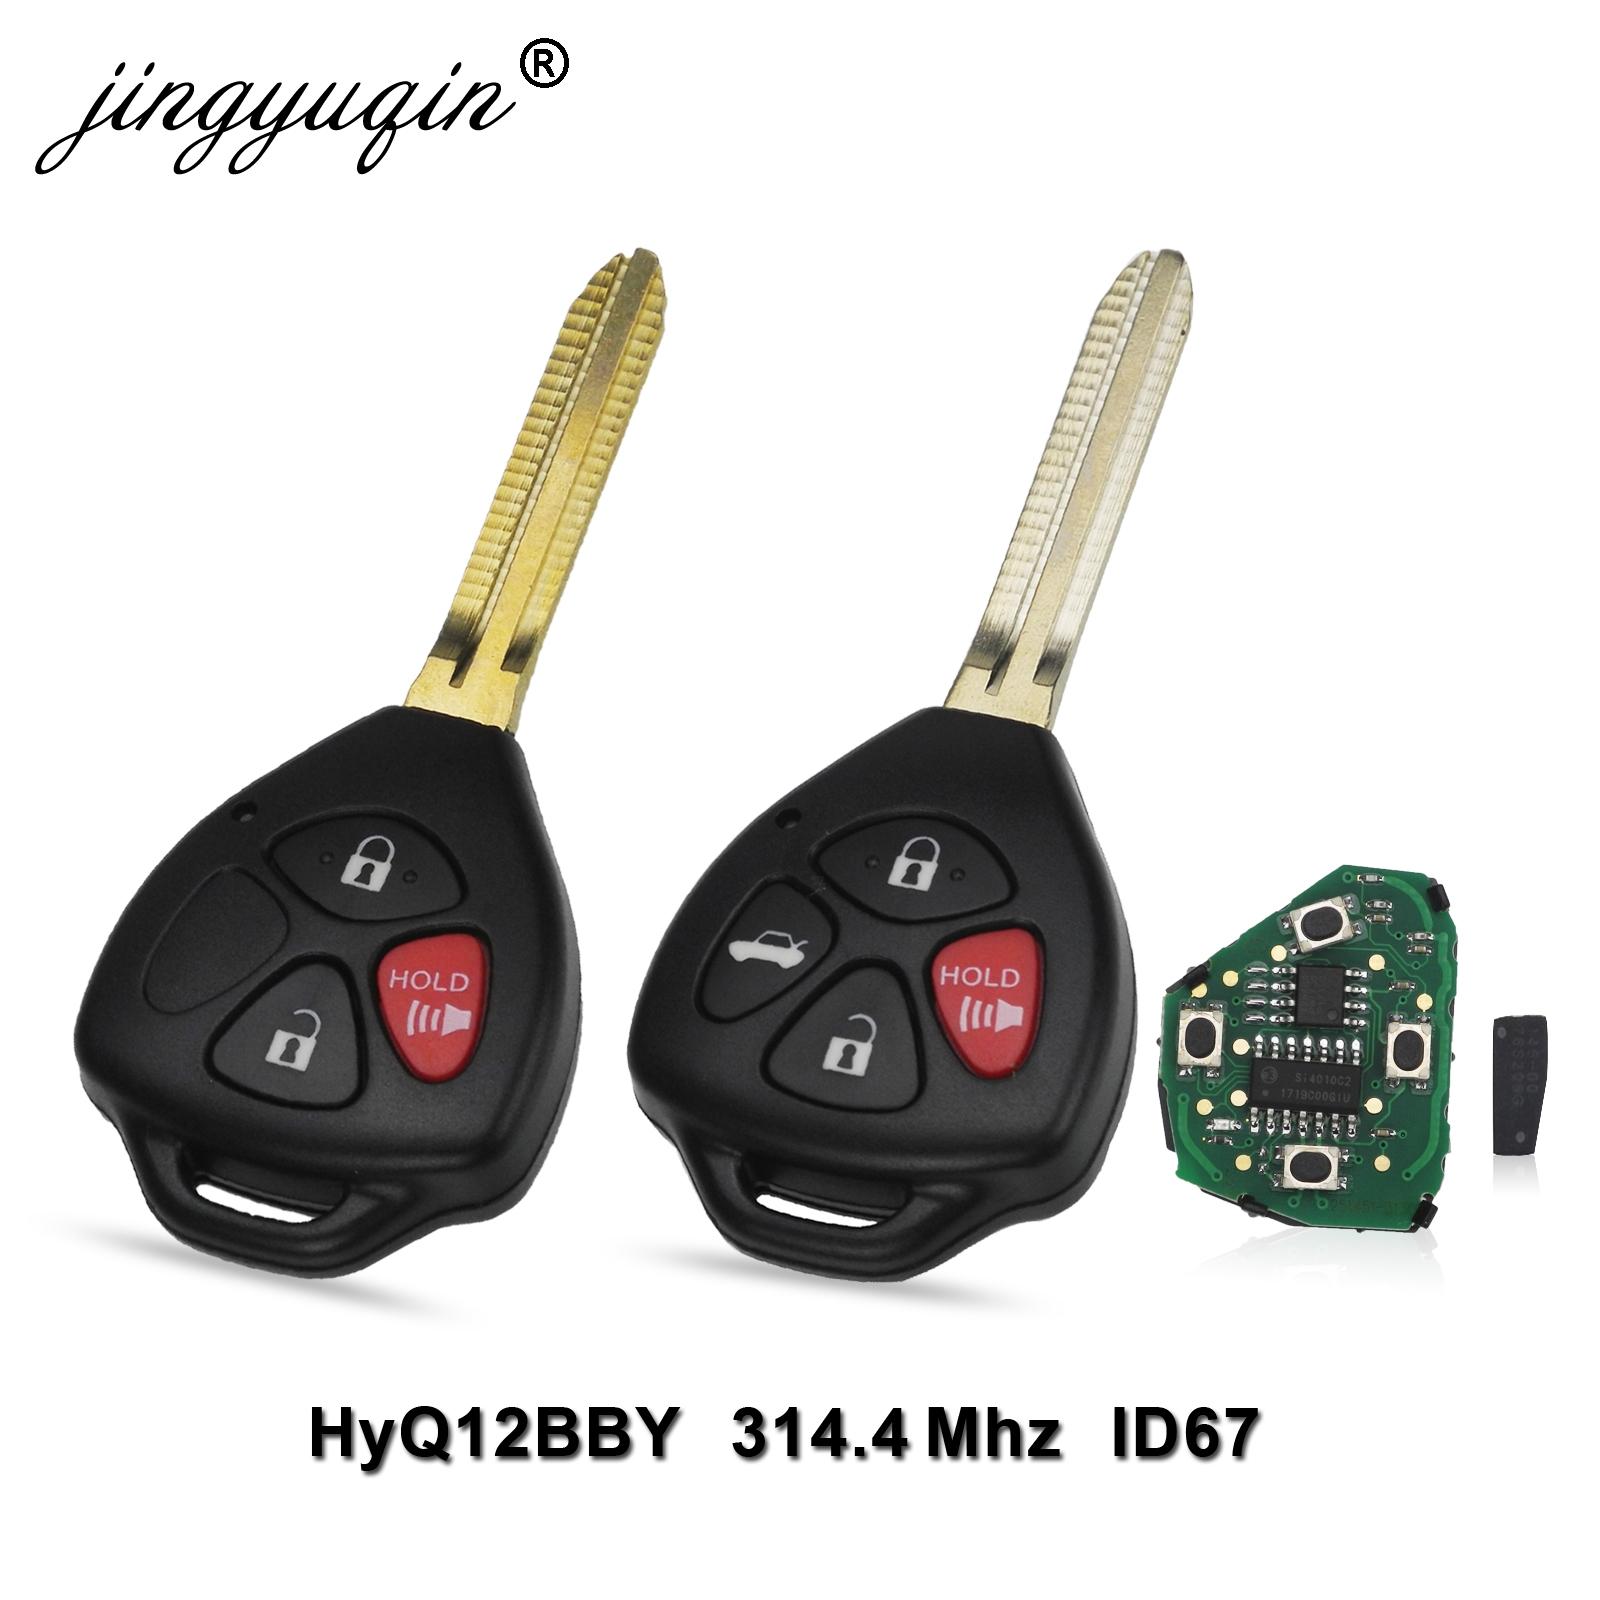 Изображение товара: Jingyuqin 315 МГц дистанционный ключ для Toyota HYQ12BBT для Toyota Camry ключ для Toyota Camry, Avalon, Corolla Matrix RAV4 Venza Yaris 4D67 или G чип опционально